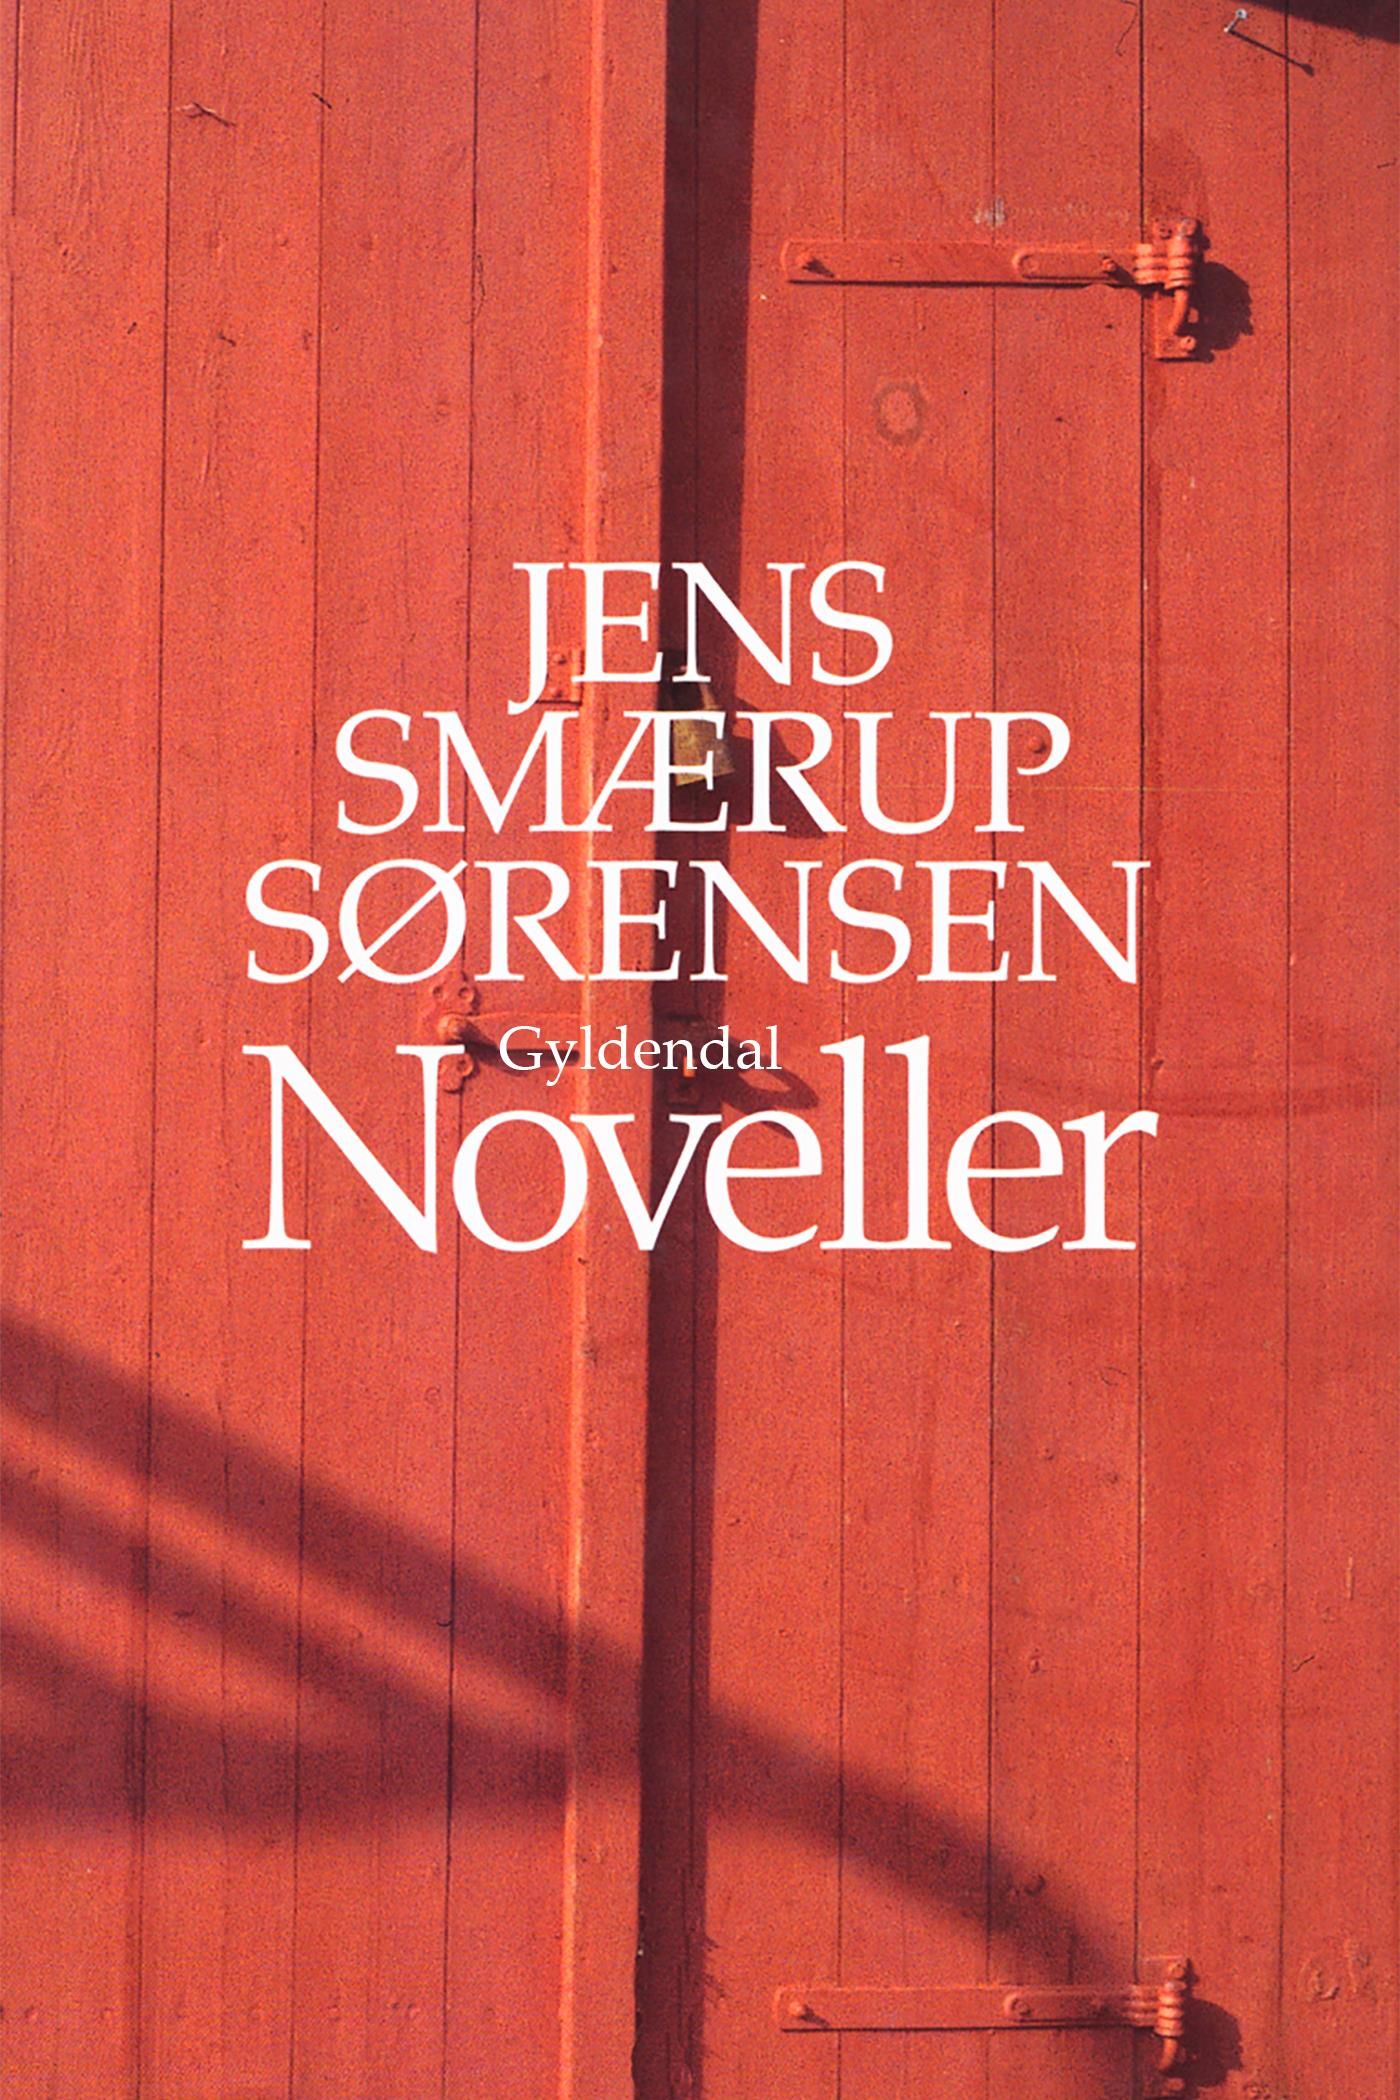 Noveller, e-bok av Jens Smærup Sørensen